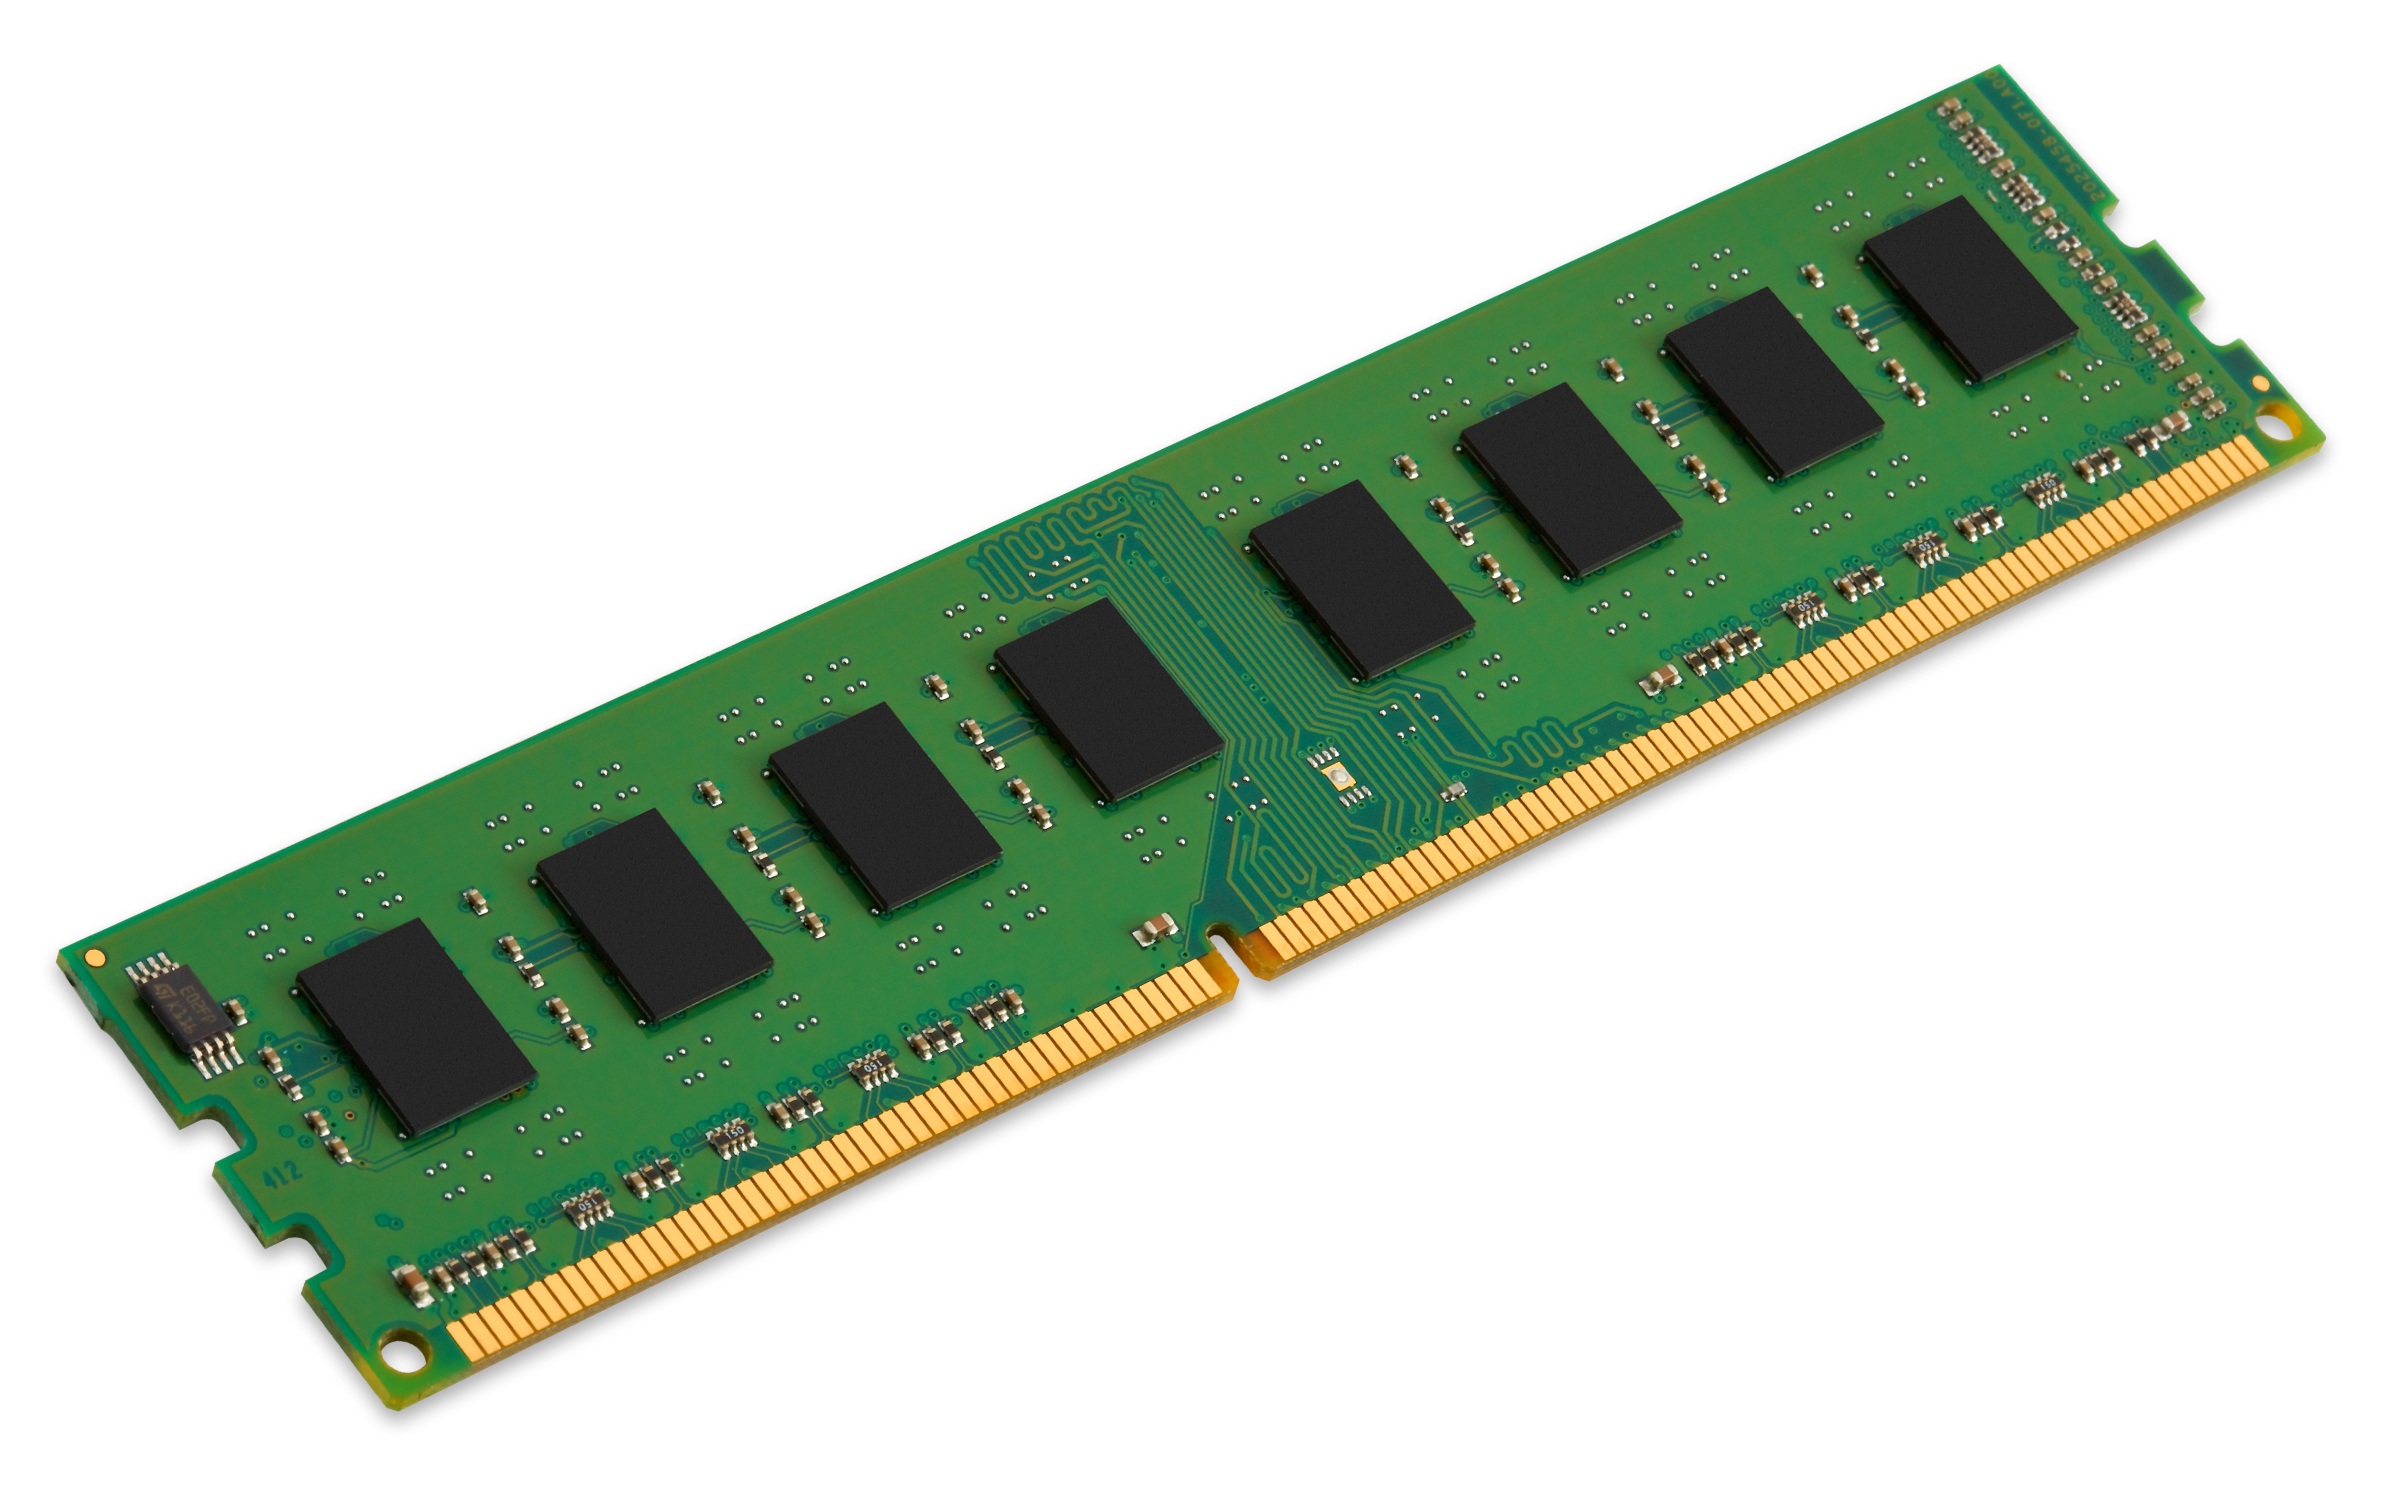 深入探讨 DDR3 内存的电源供应问题，揭示其魅力与重要性  第3张